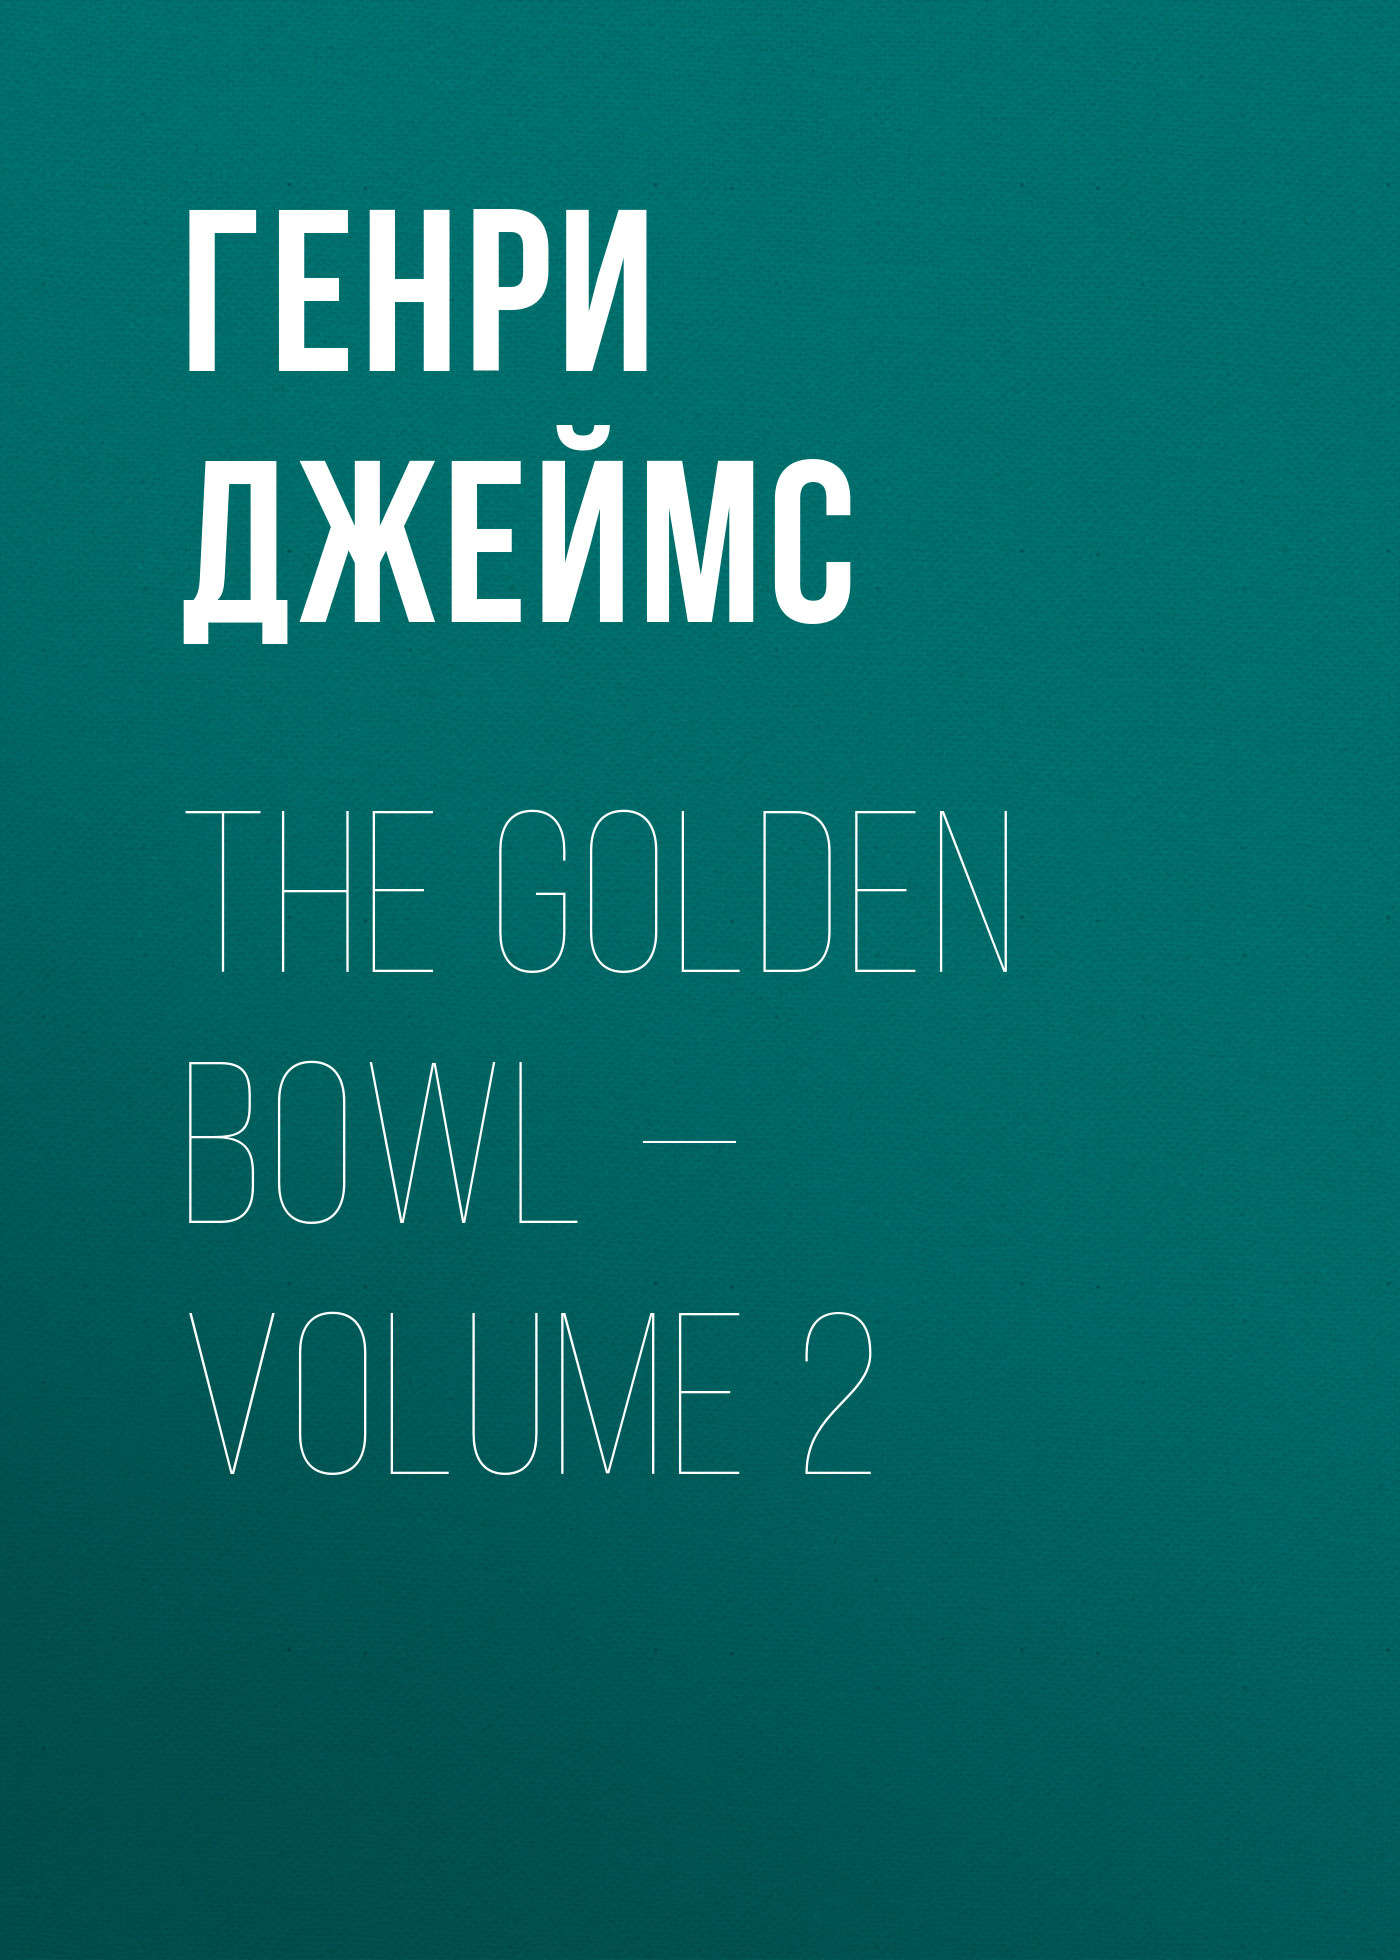 The Golden Bowl— Volume 2